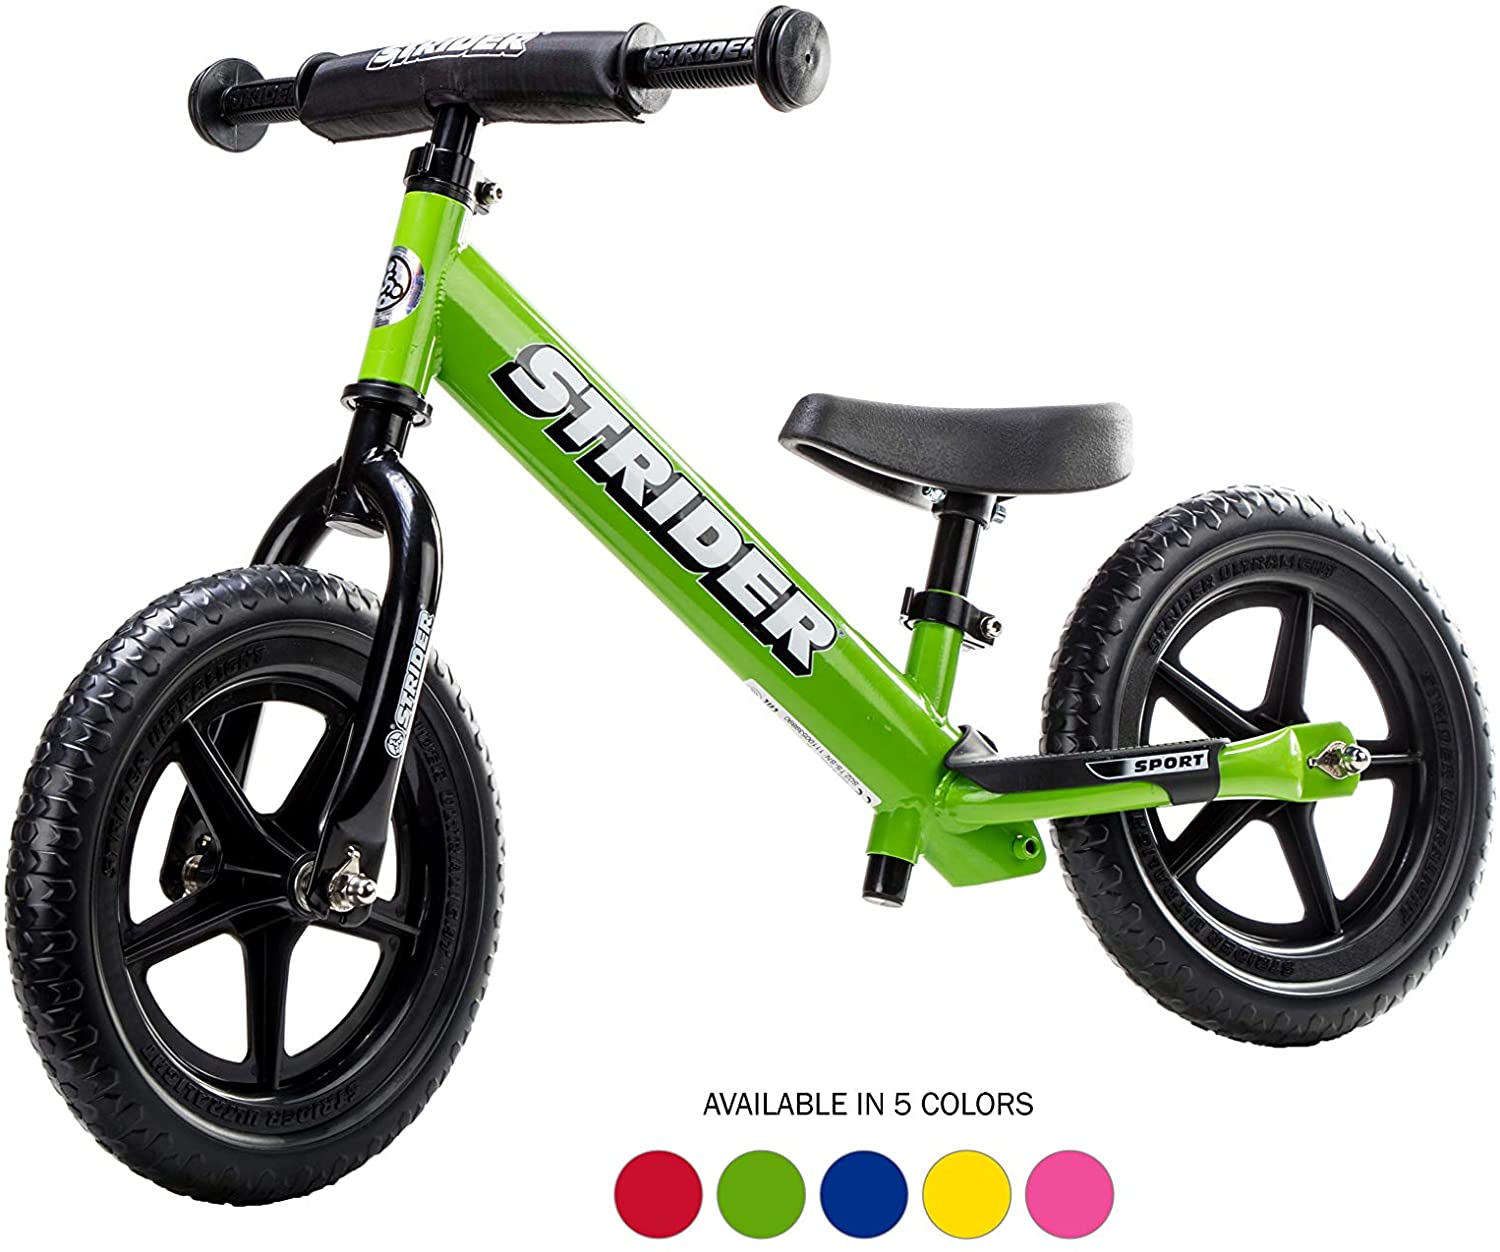 The Best Toddler Balance Bike – The Strider 12 Sport